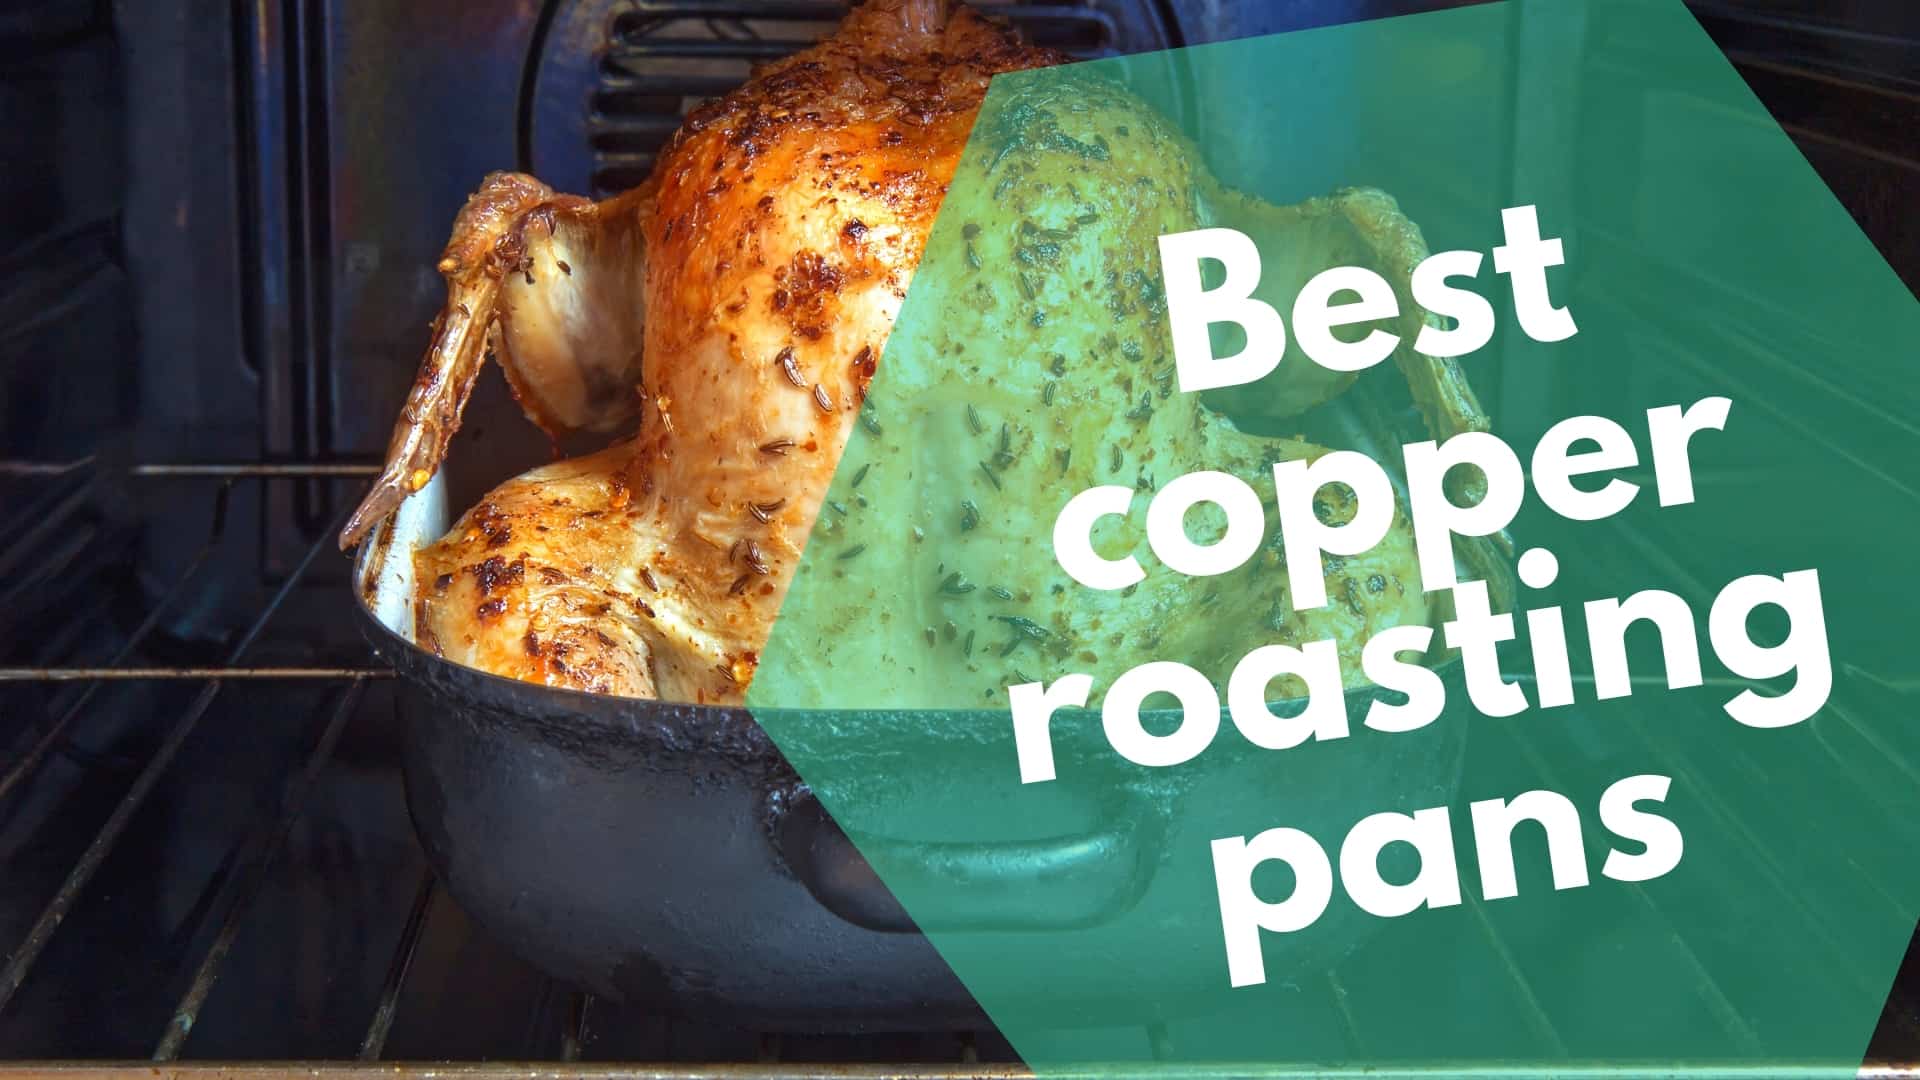 Best copper roasting pans